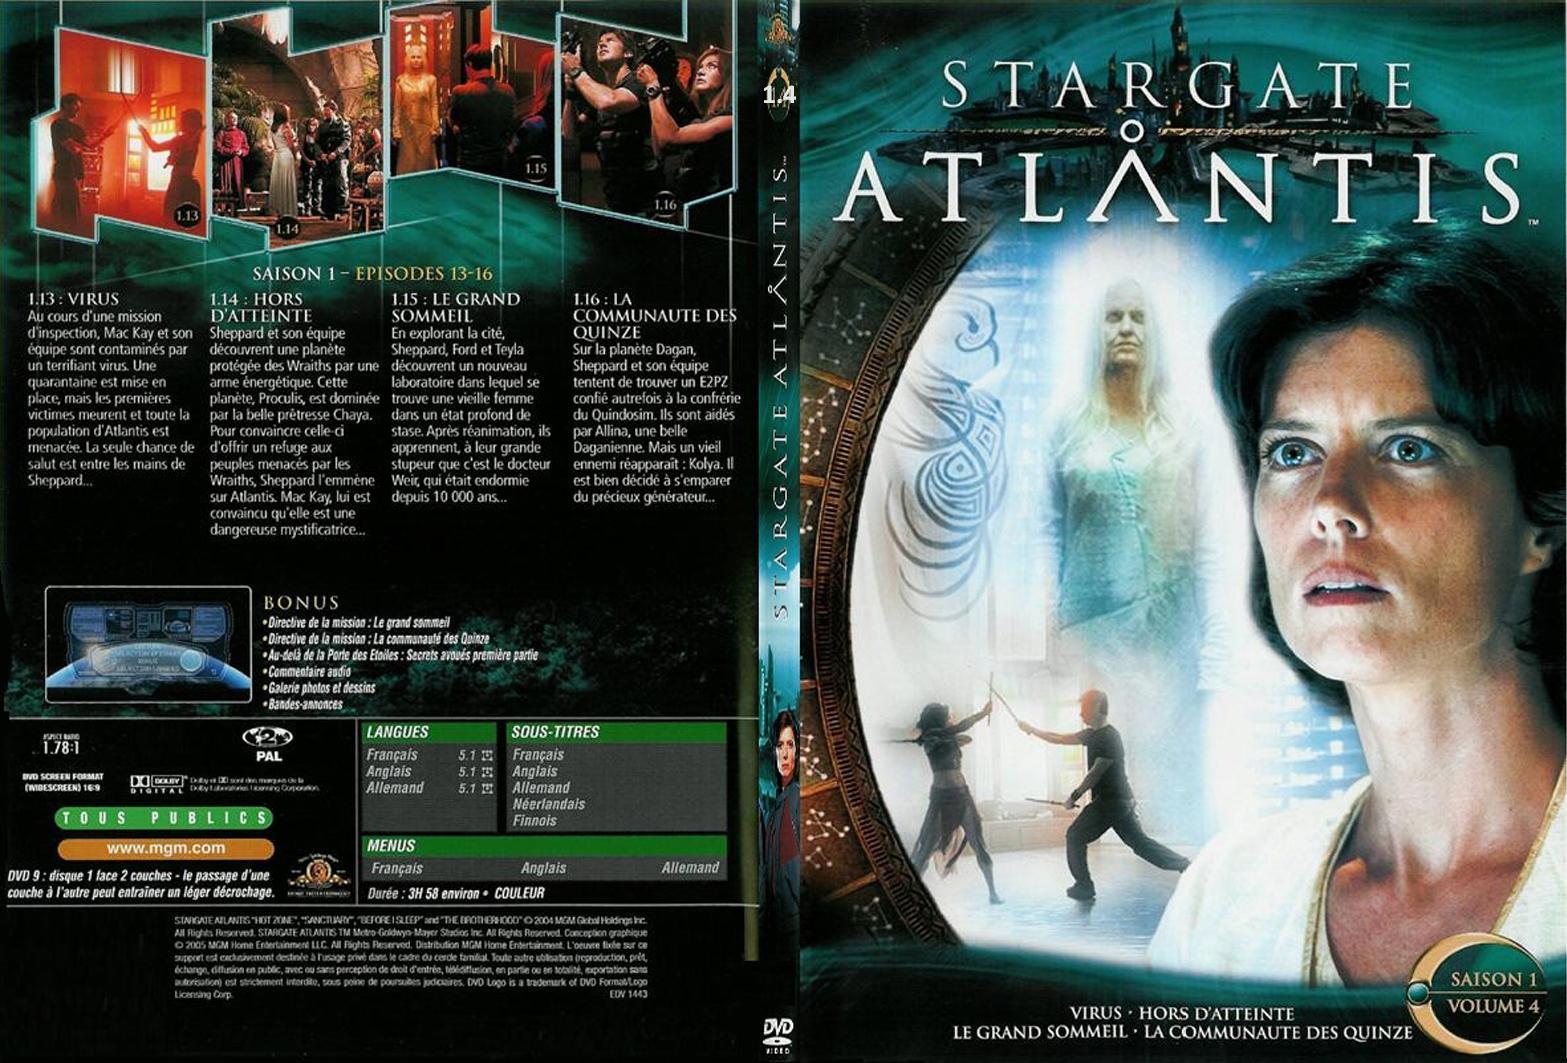 Jaquette DVD Stargate Atlantis saison 1 vol 4 - SLIM